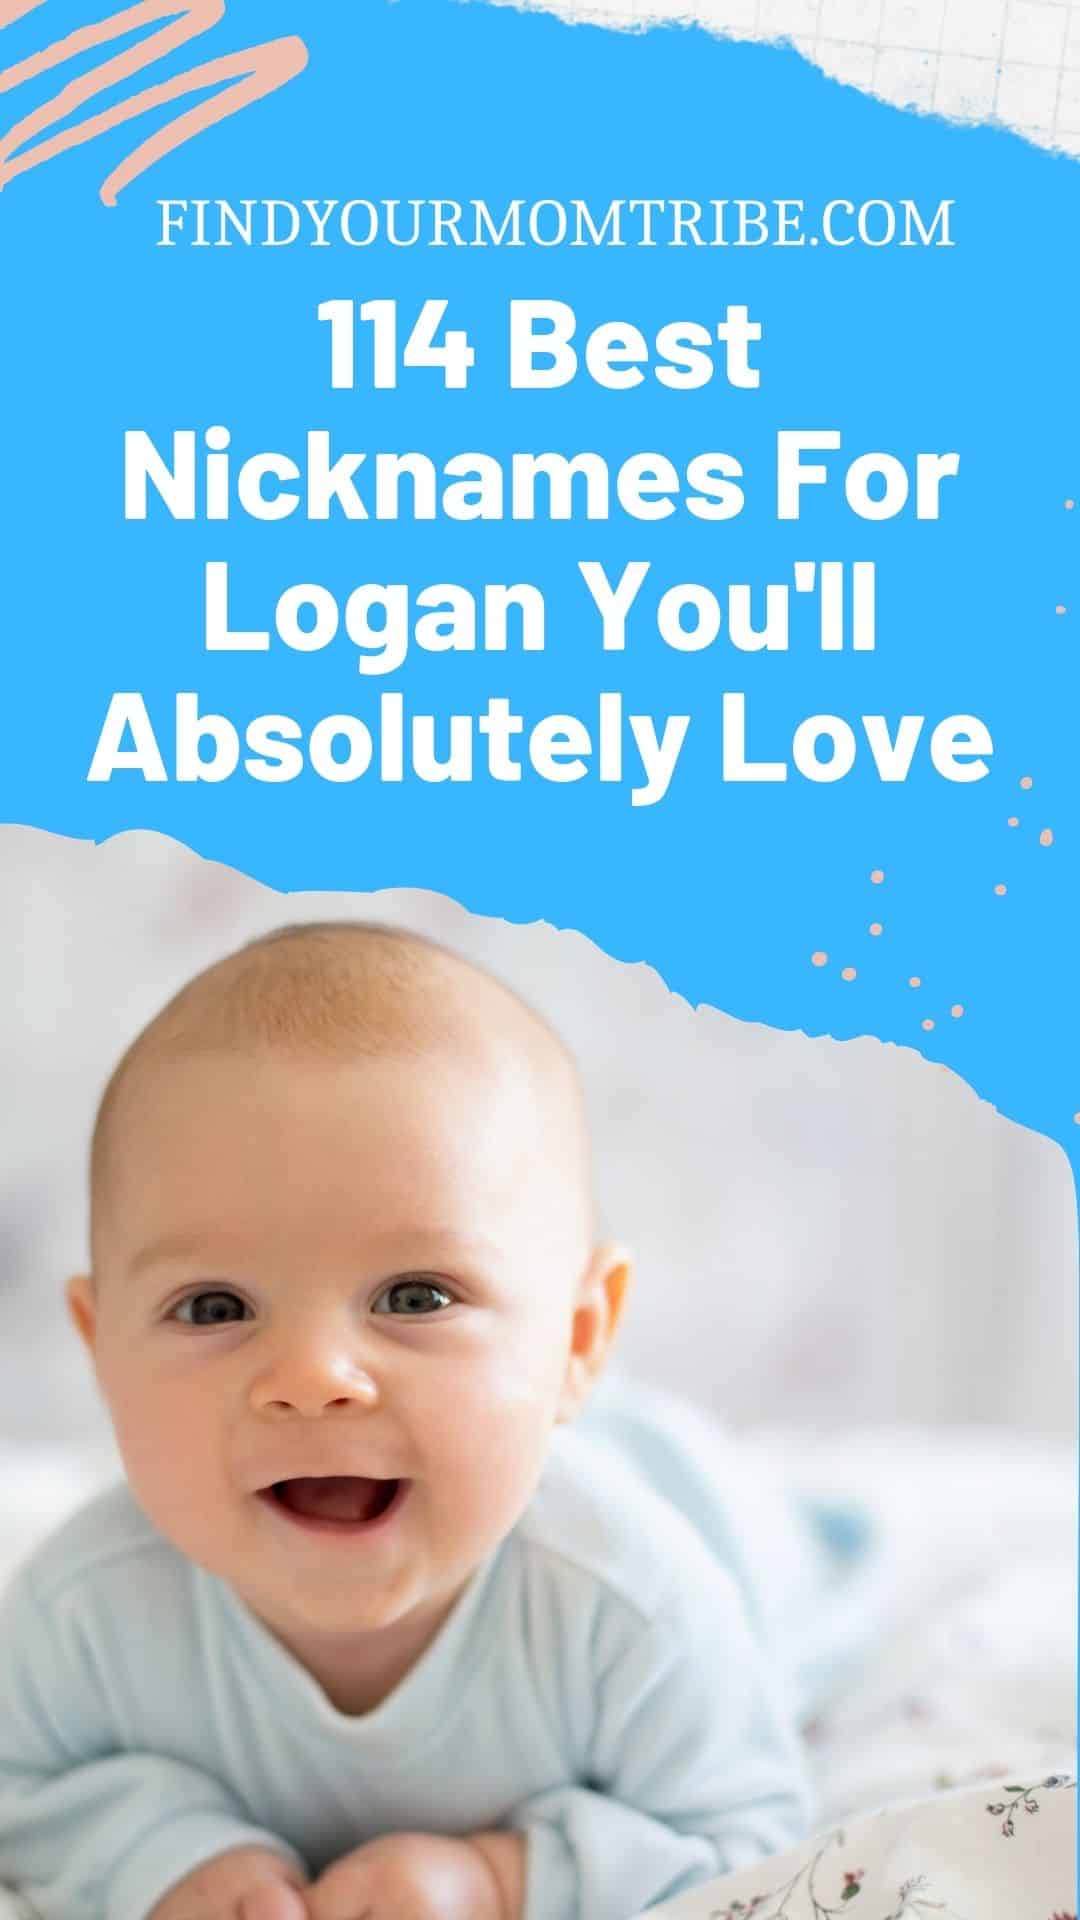 Pinterest nicknames for logan